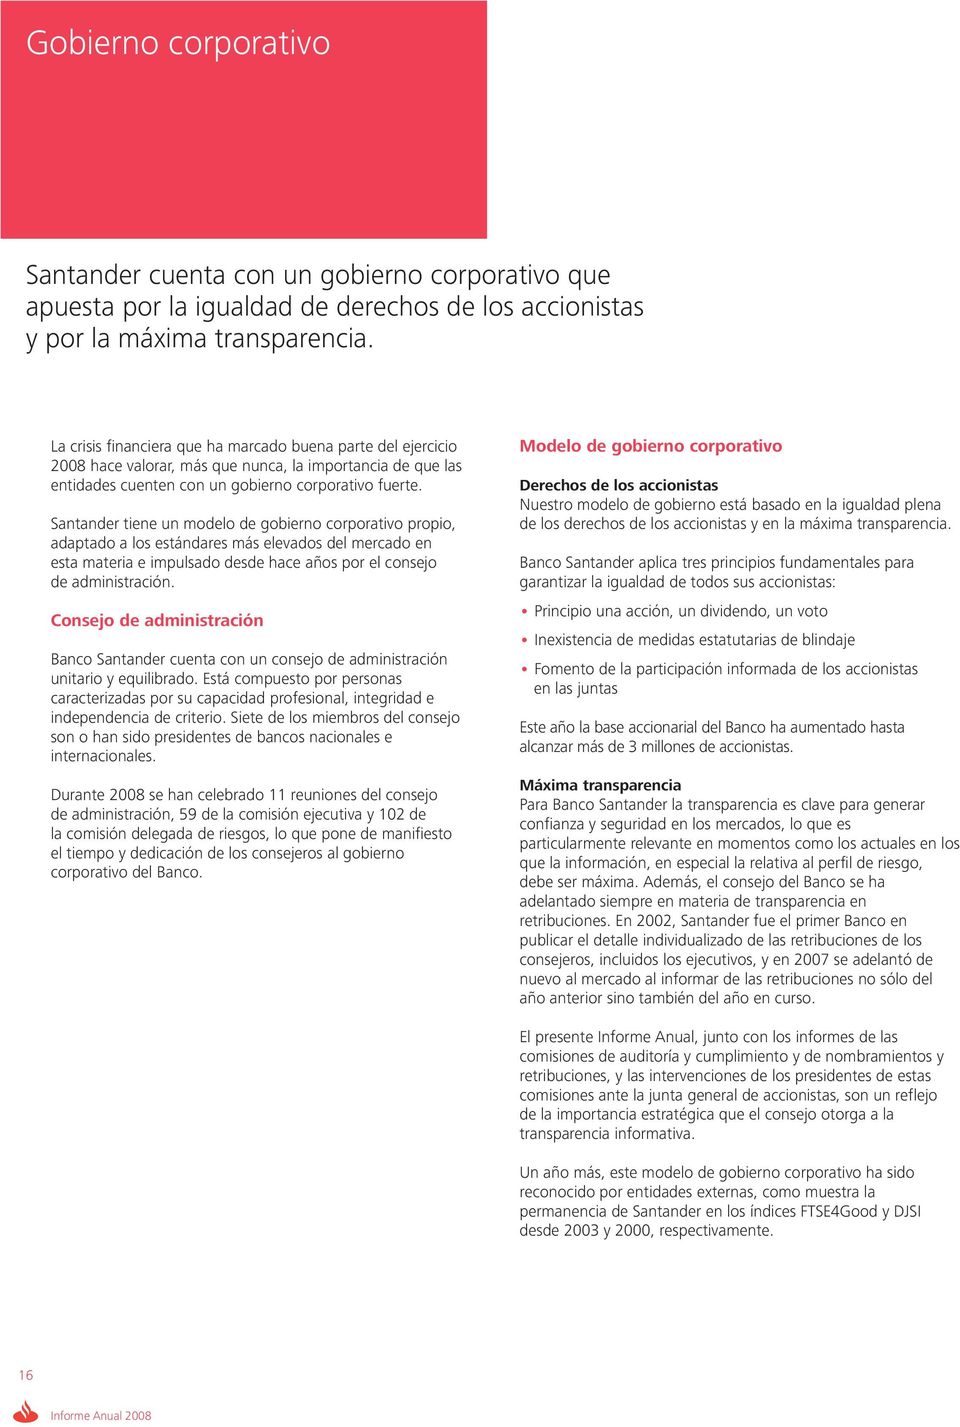 Santander tiene un modelo de gobierno corporativo propio, adaptado a los estándares más elevados del mercado en esta materia e impulsado desde hace años por el consejo de administración.